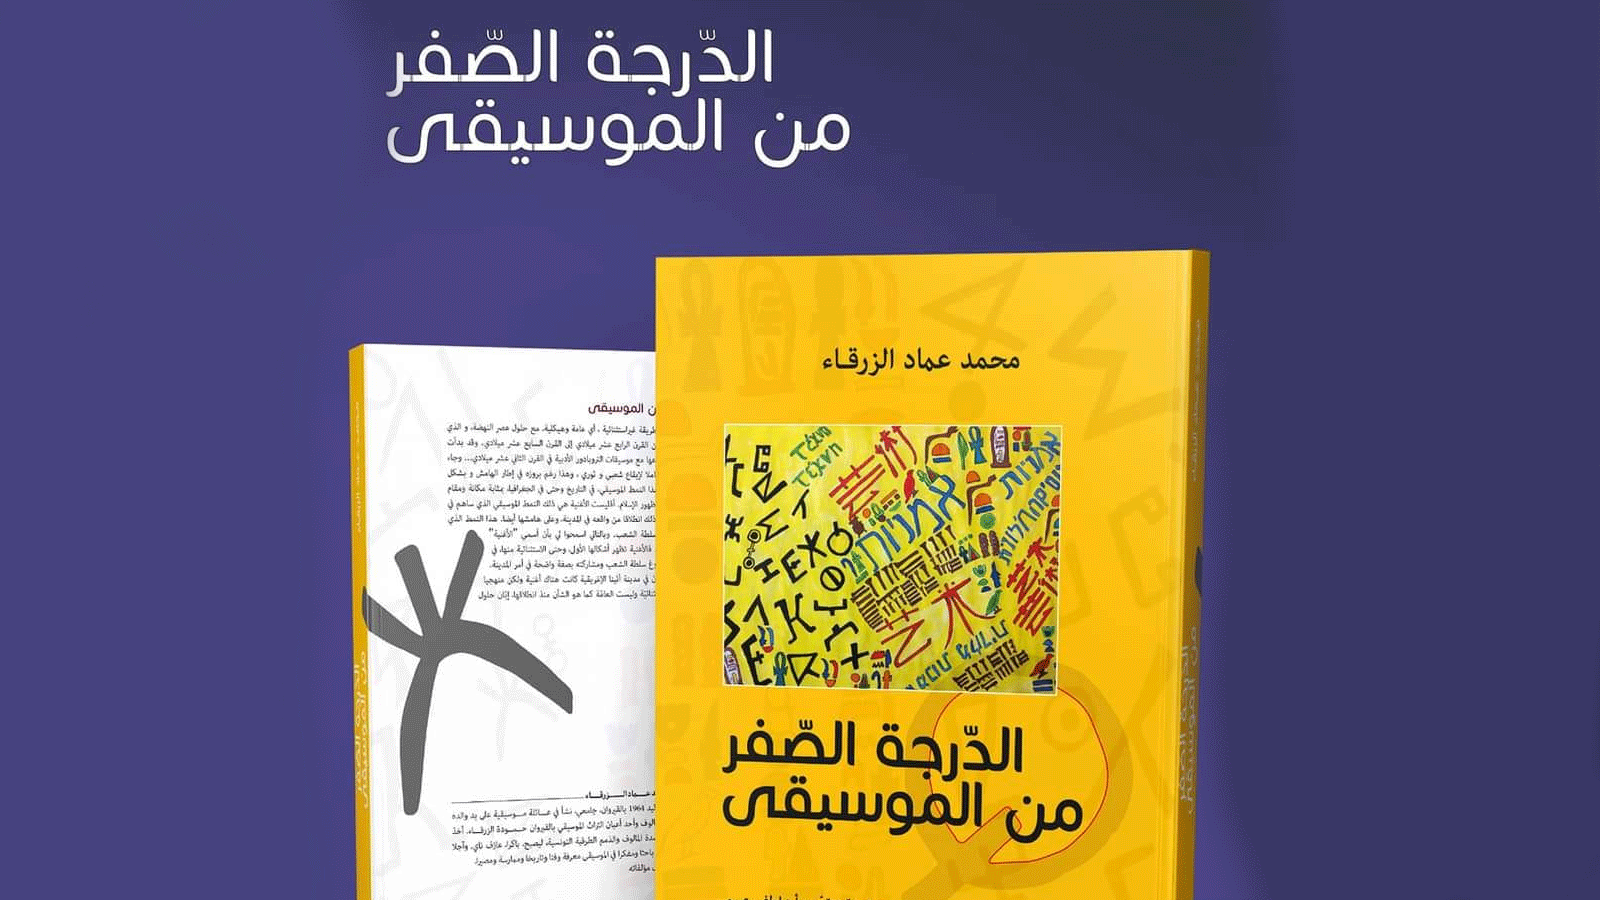 صورة لغلاف كتاب الدرجة صفر من الموسيقى(فيسبوك\دار الكتاب التونسي)